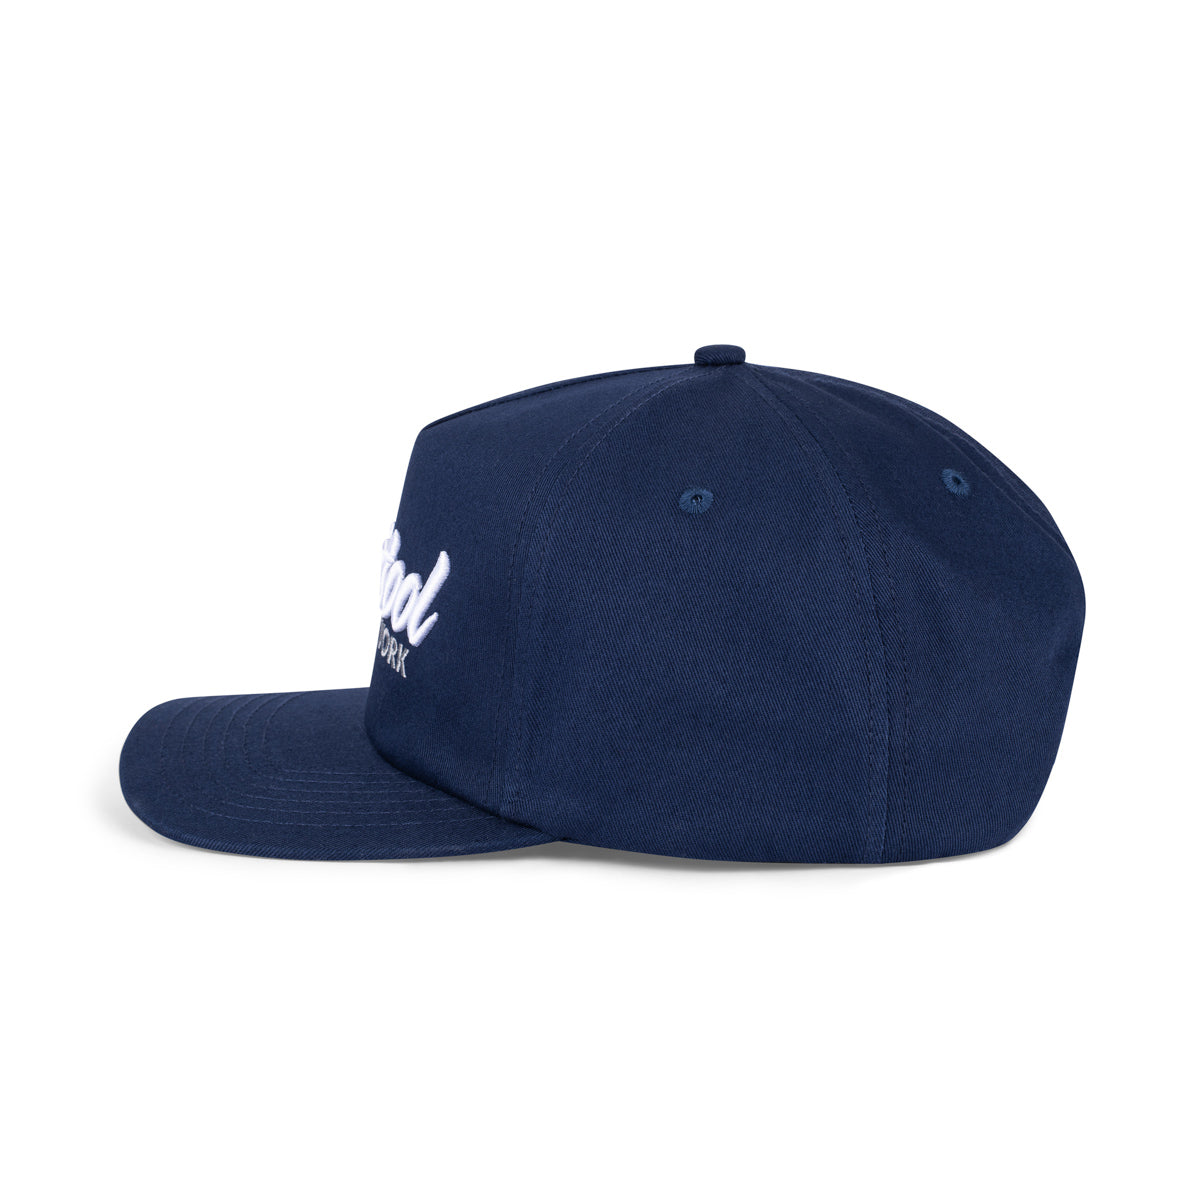 Barstool NY Retro Snapback Hat-Hats-Barstool Sports-Barstool Sports